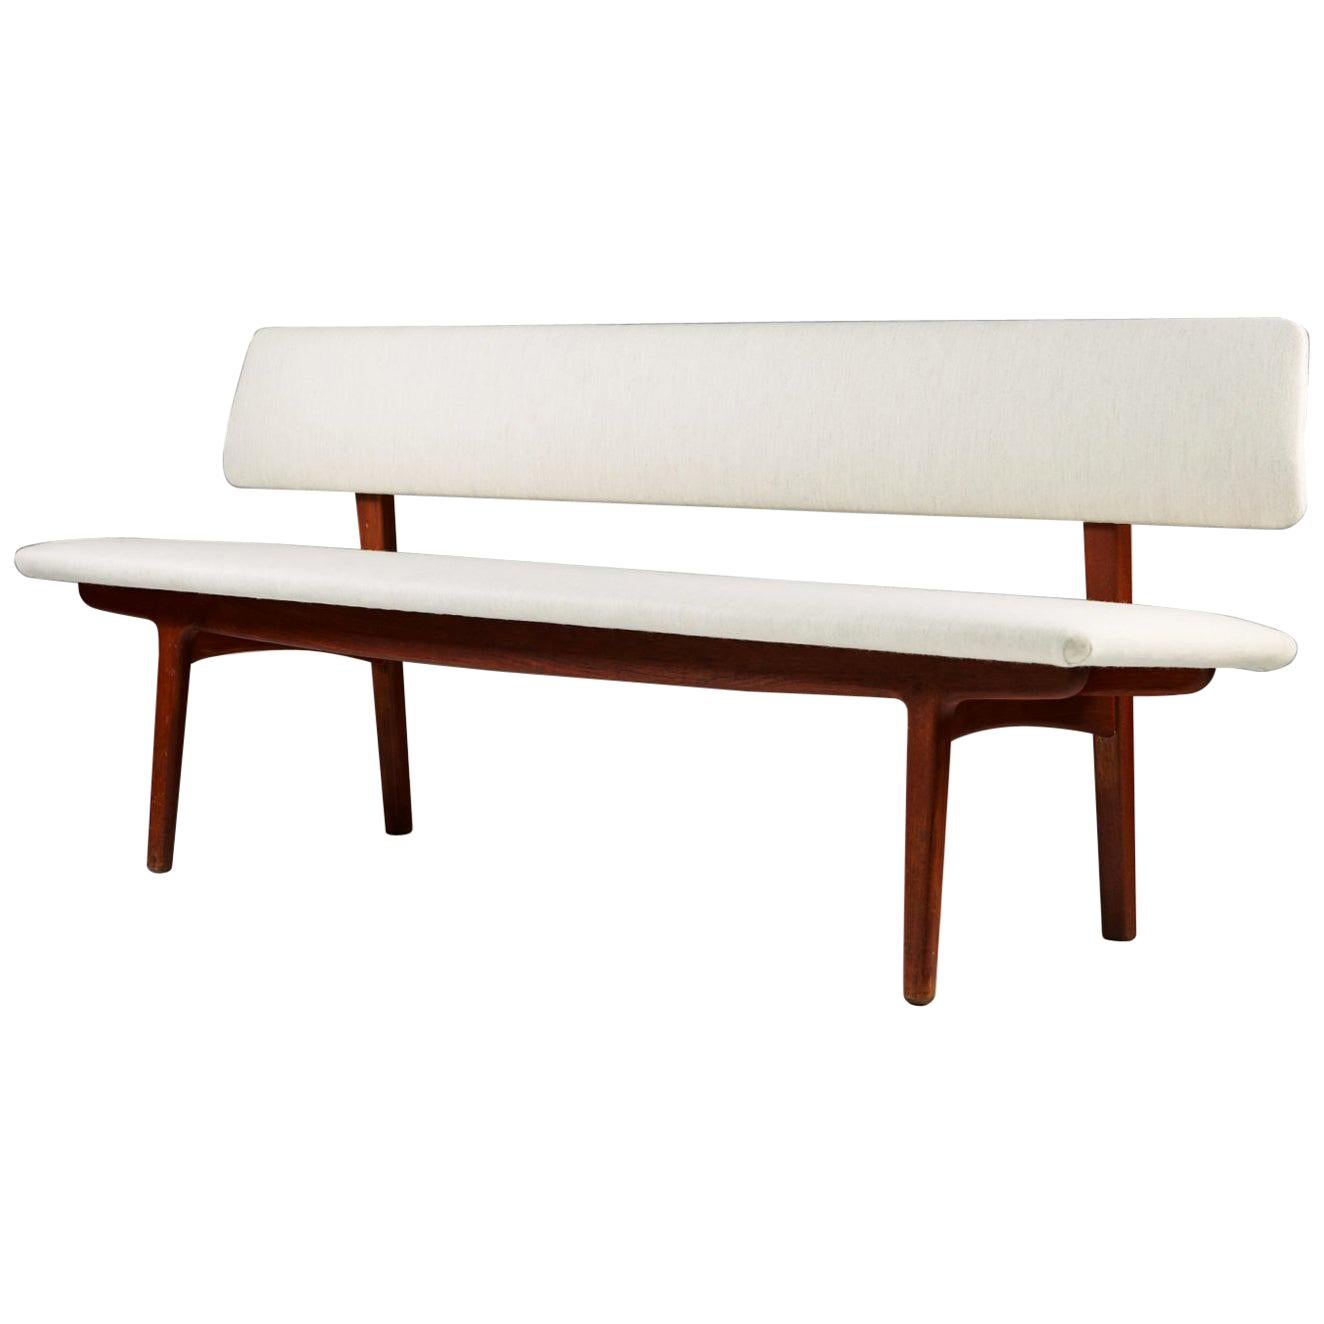 Bench with Backrest Designed by Ejnar Larsen & Axel Bender Madsen, 1957